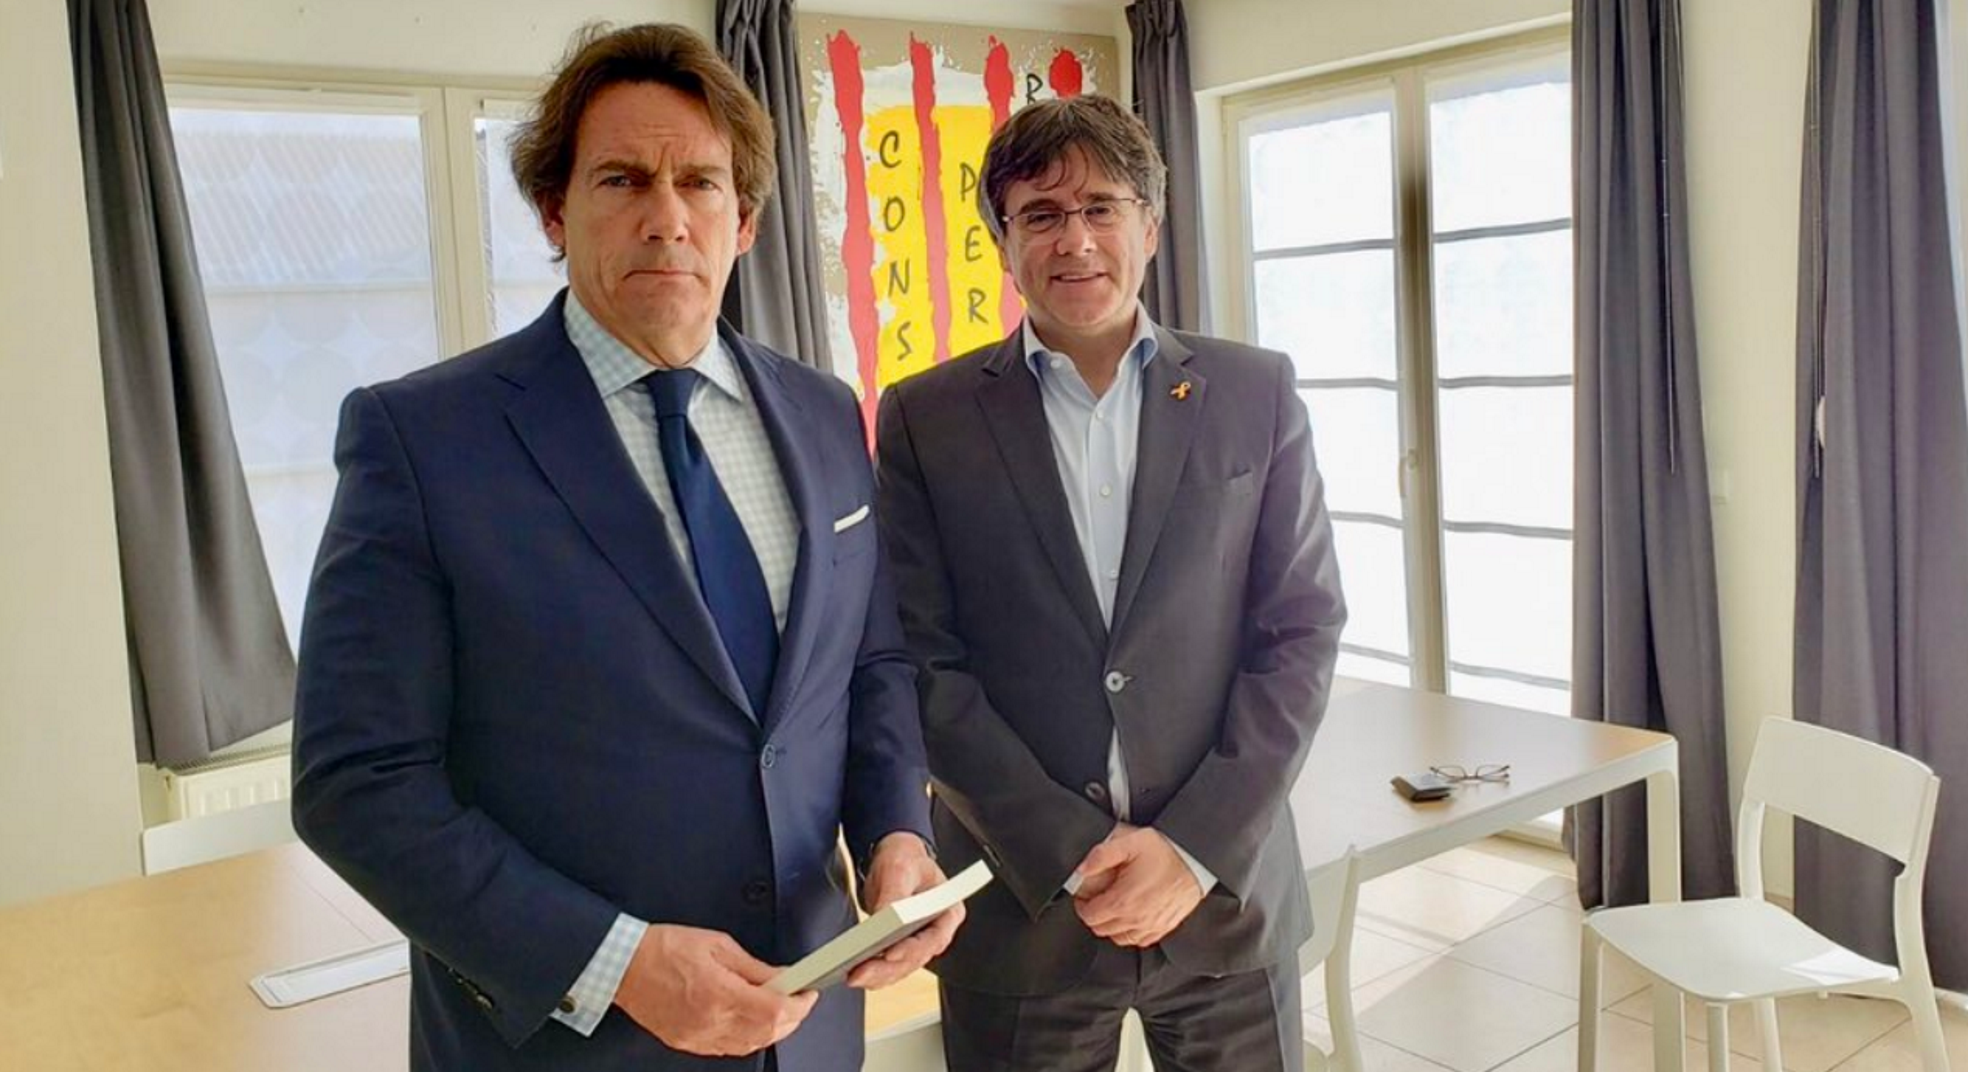 El primer empresario de medios de Quebec visita a Puigdemont: "España, régimen autoritario"